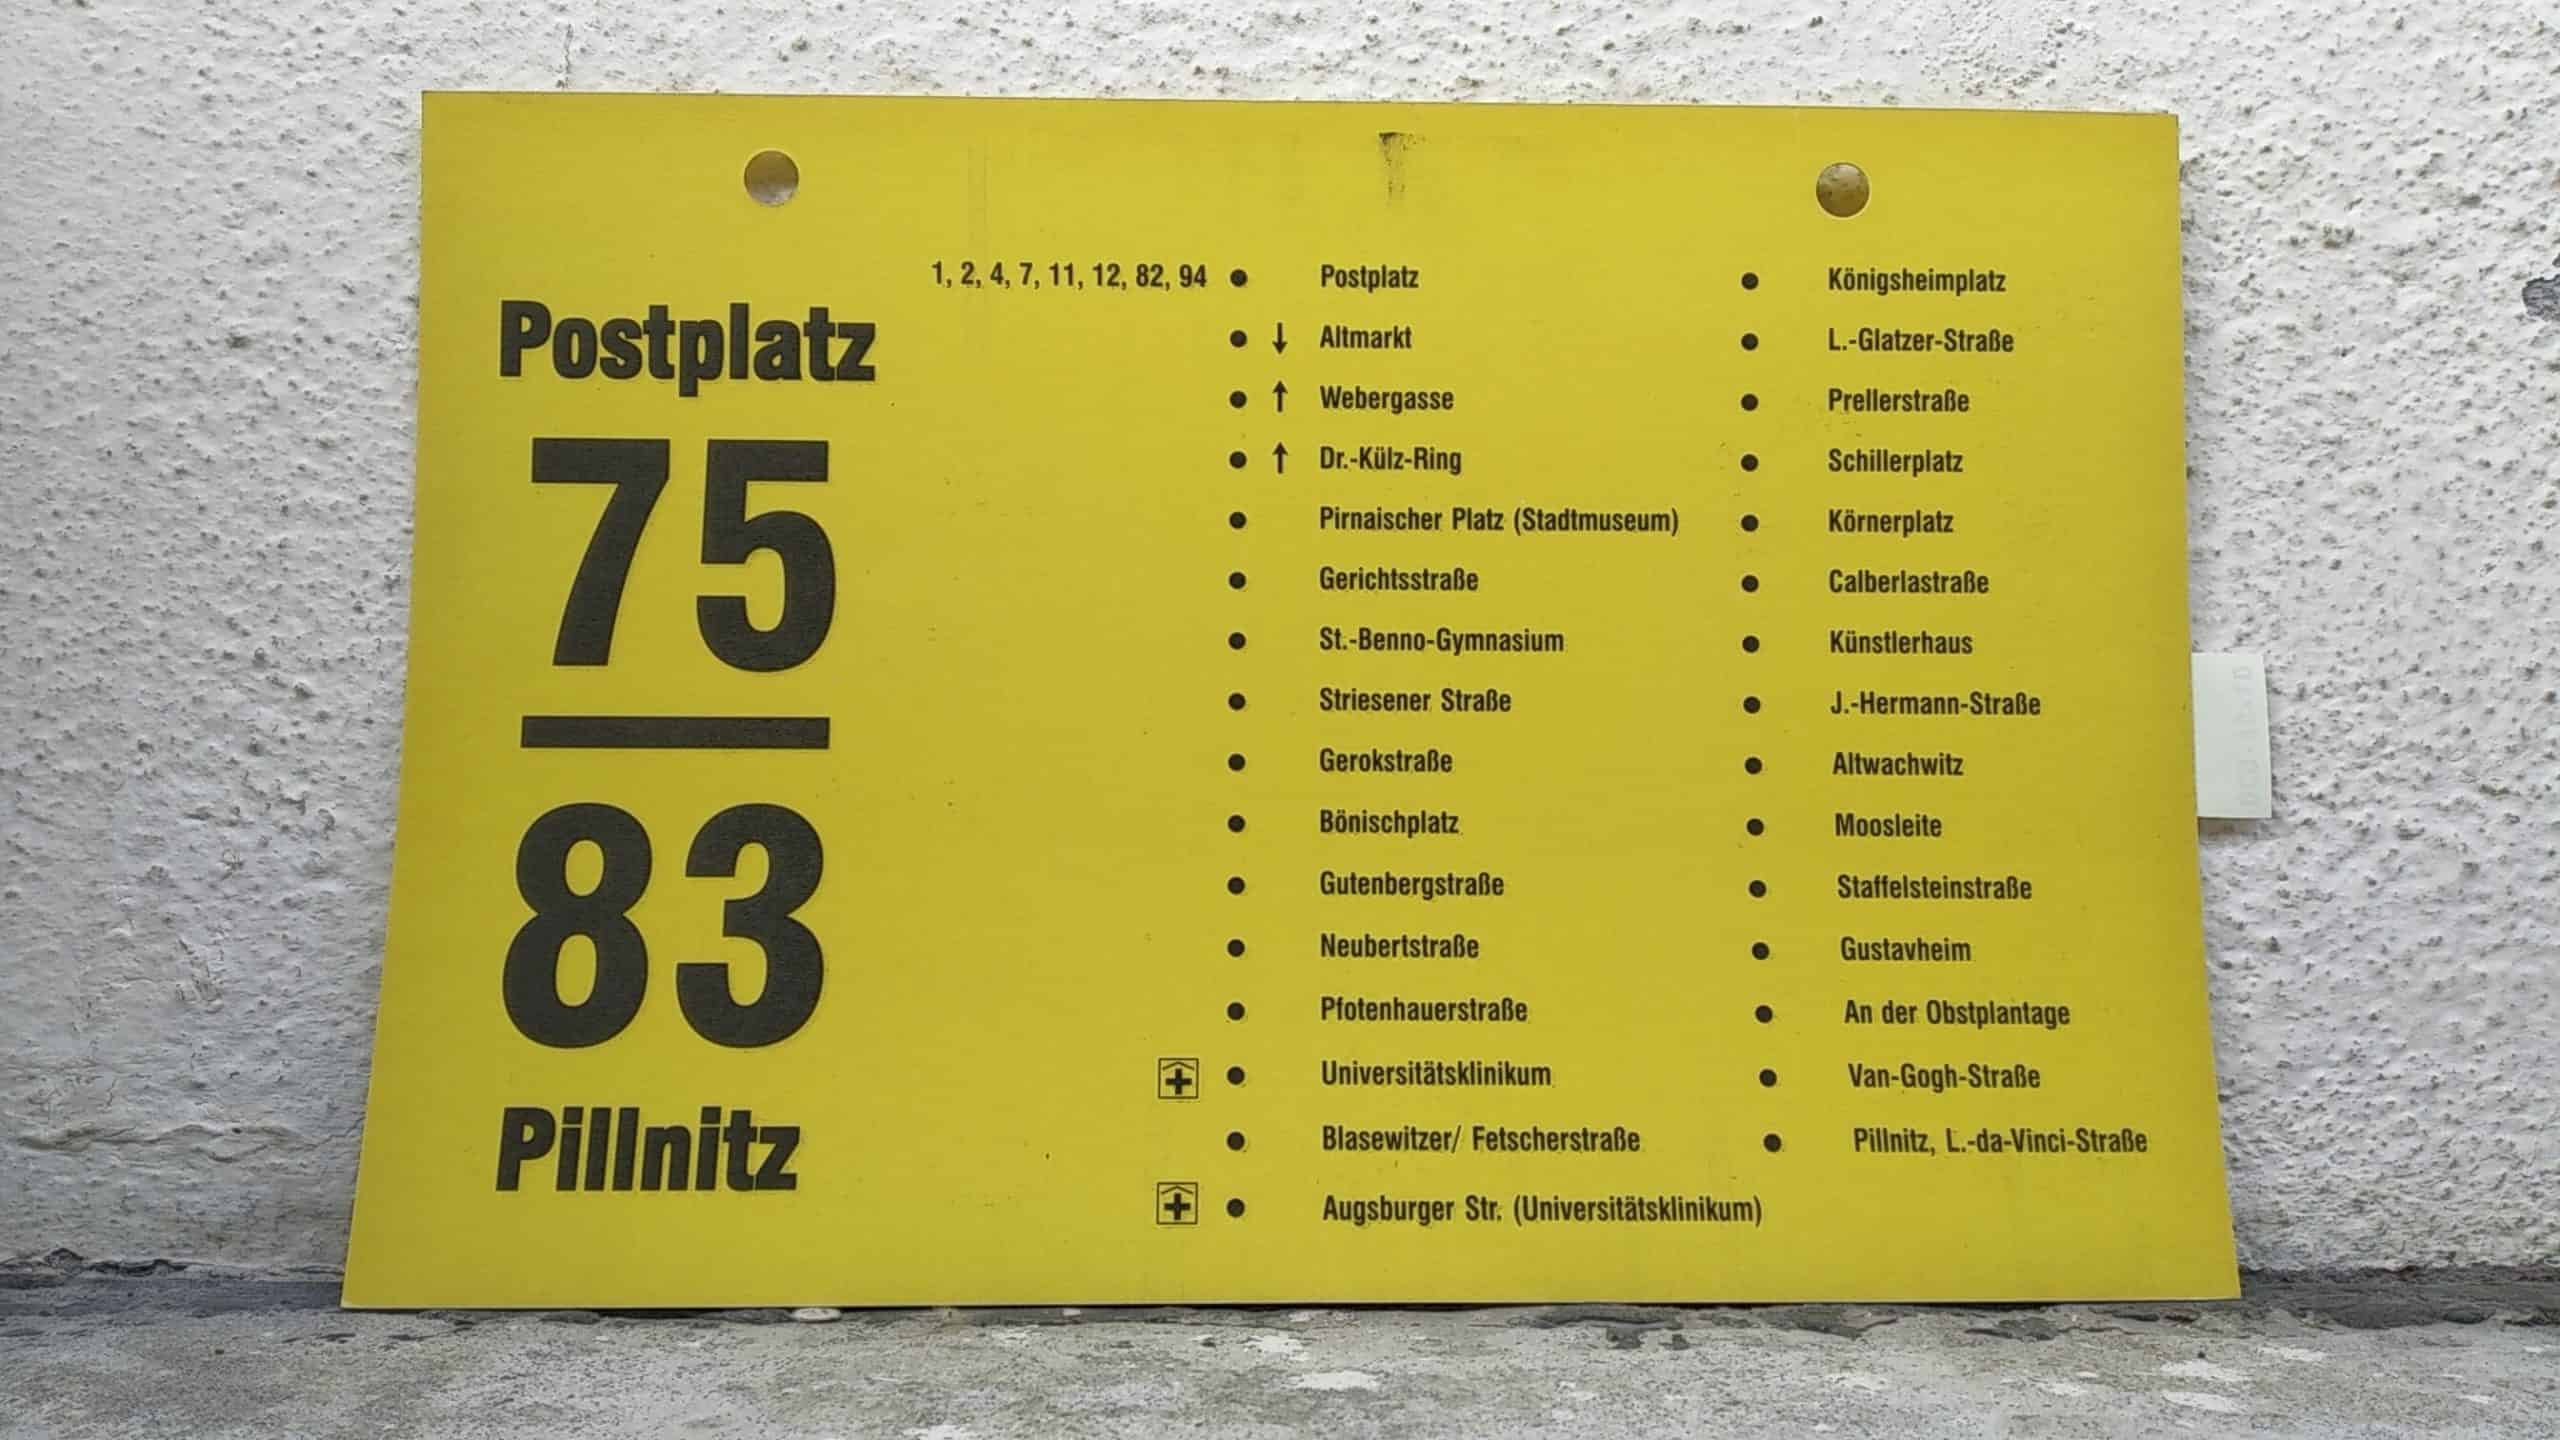 Ein seltenes Bus-Linienschild aus Dresden der Linie 75/83 von Postplatz nach Pillnitz, L.nachdanachVincinachStr. #2